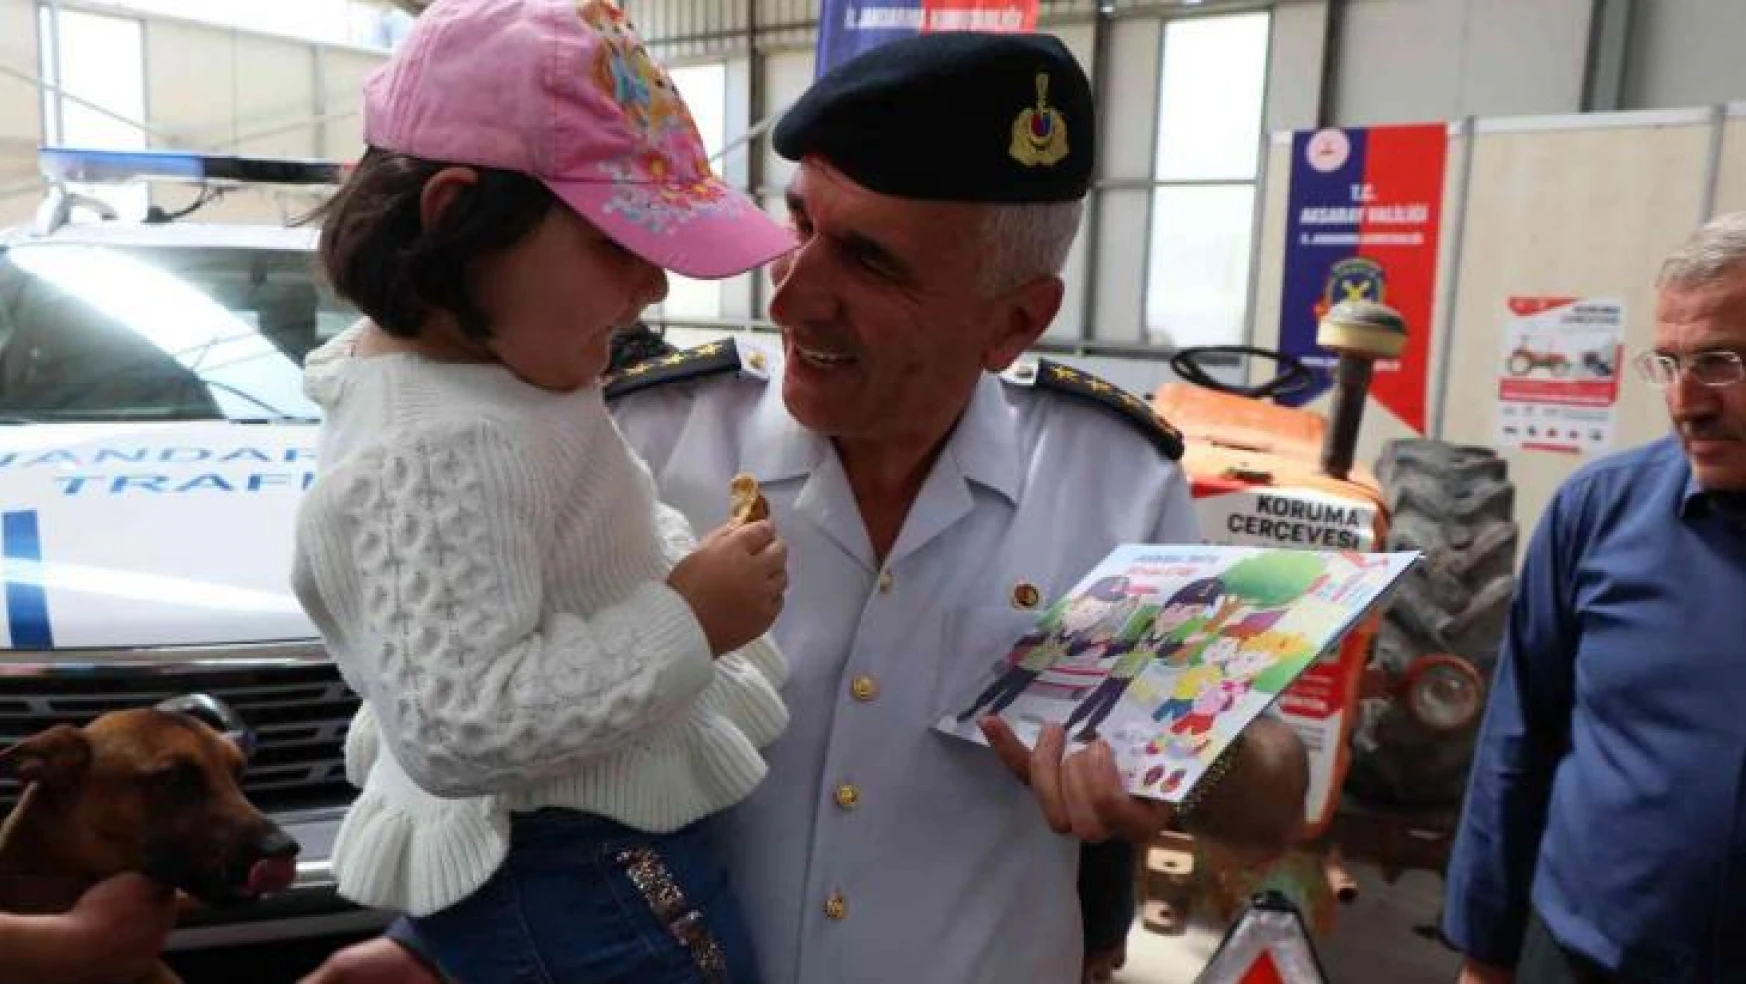 Jandarma komutanı fuarda çocuklara kitap dağıtıp jandarmayı anlattı